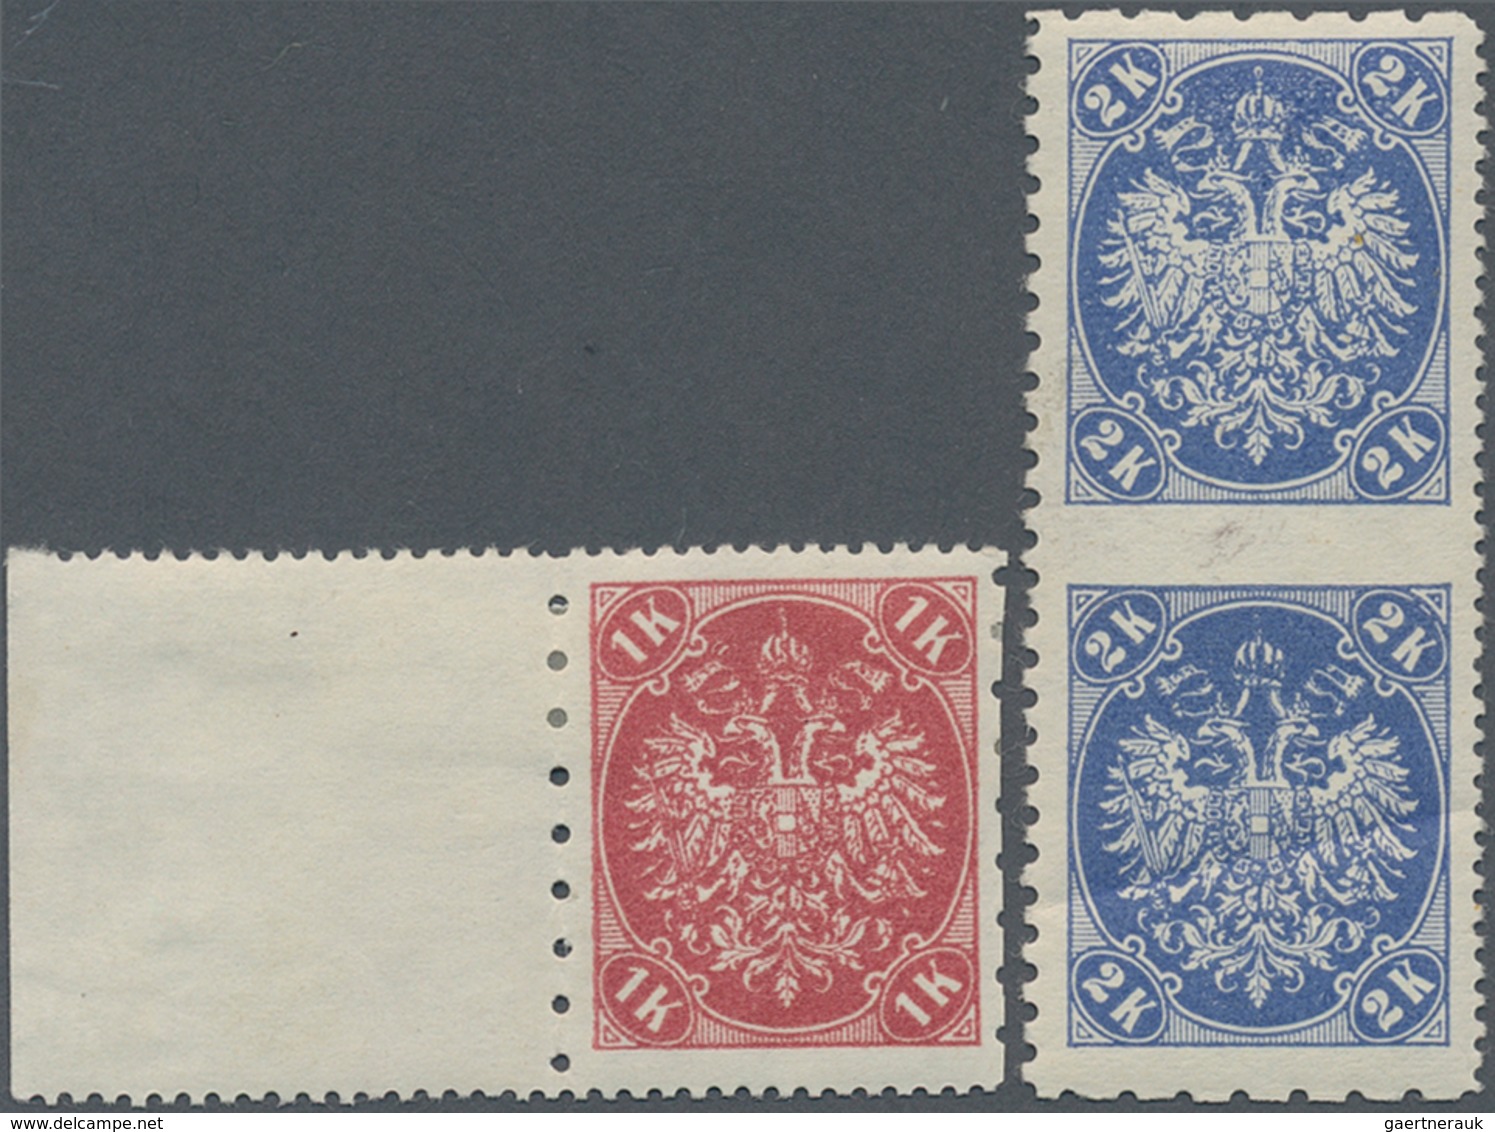 Bosnien Und Herzegowina: 1900, Definitives "Double Eagle", 1kr. Rose And 2 Kr. Ultramarine, Speciali - Bosnië En Herzegovina